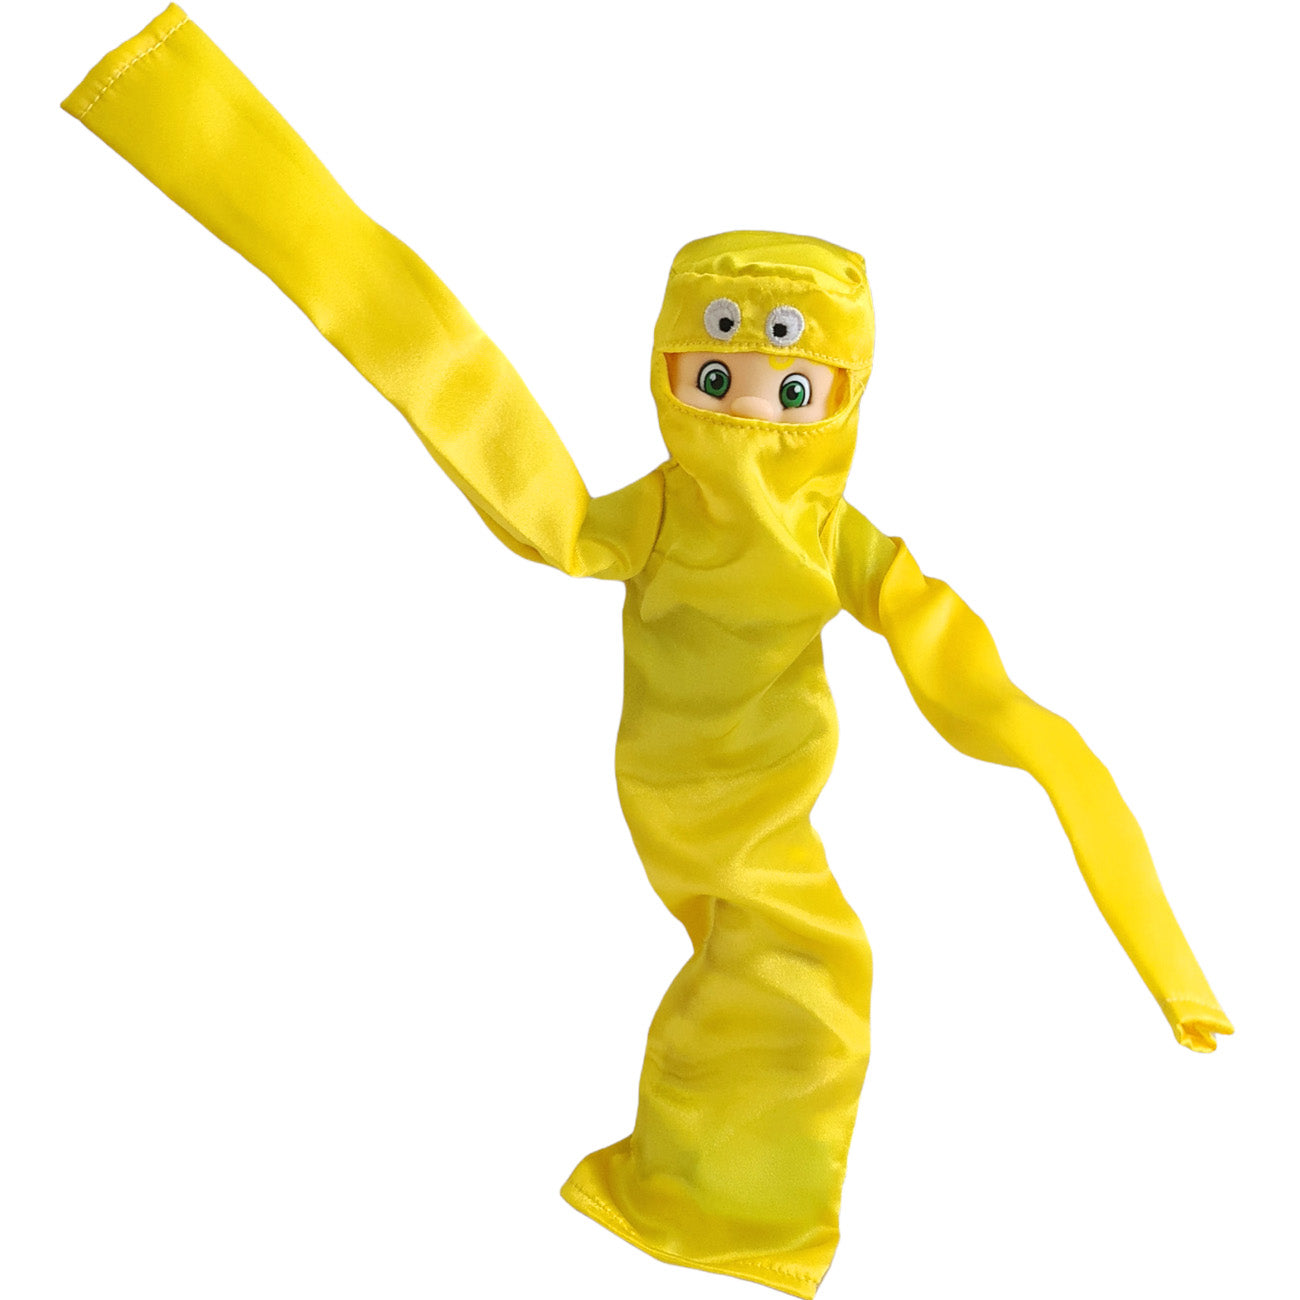 Wacky inflatable yellow elf costume